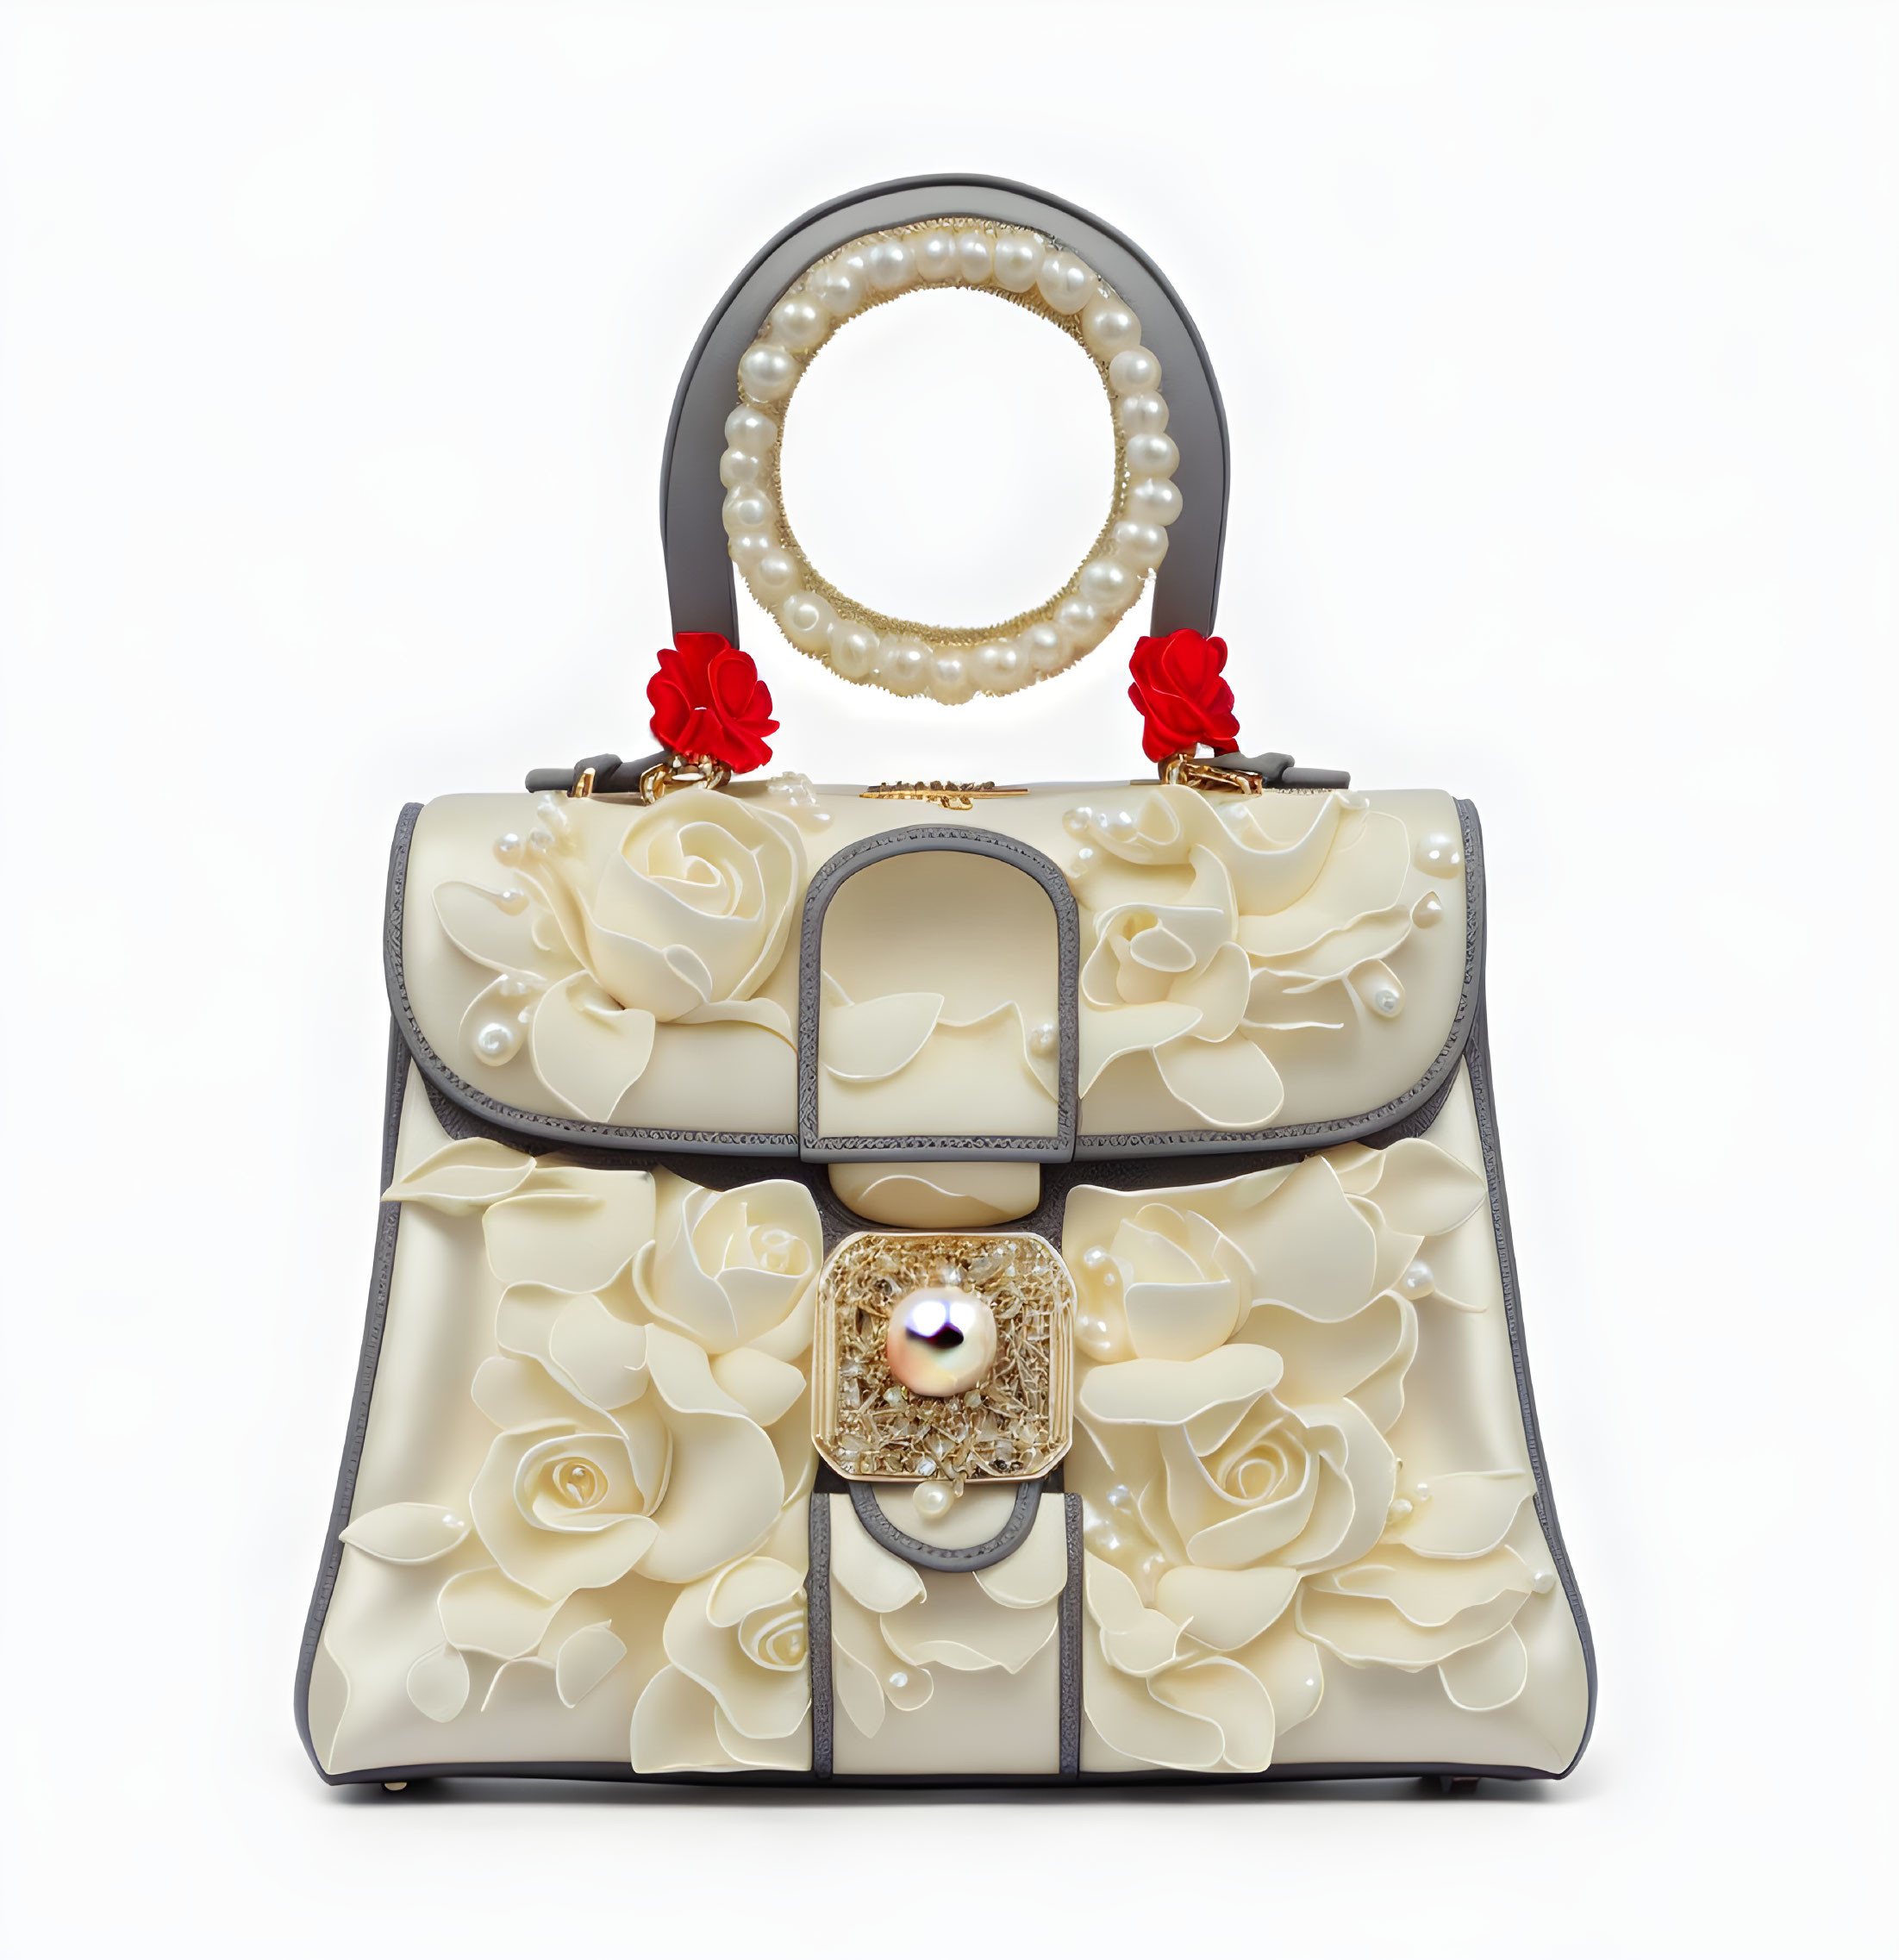 Pearl and coral handbag - variation 3 - Roses